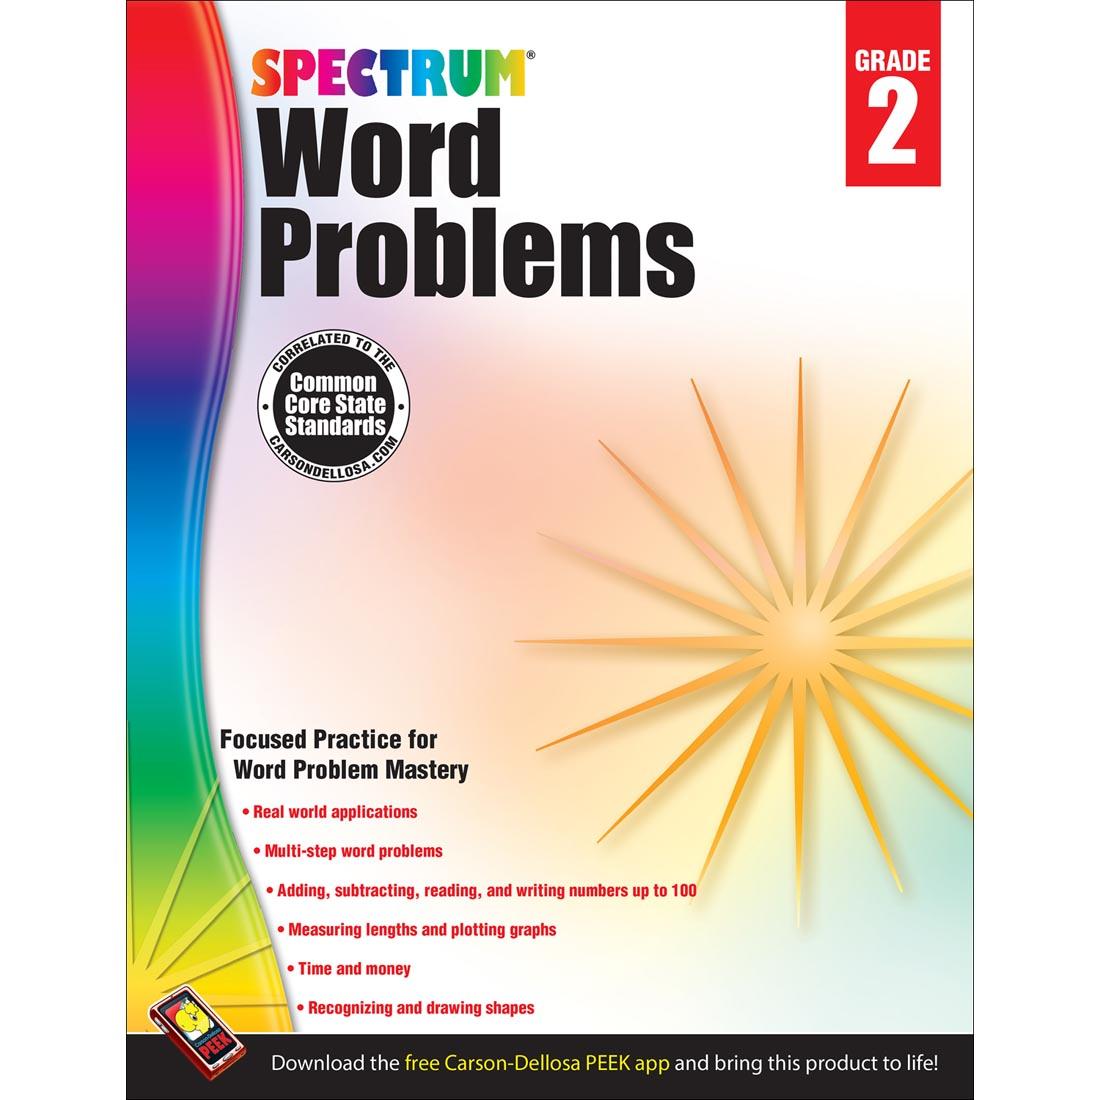 Spectrum Word Problems by Carson Dellosa Grade 2